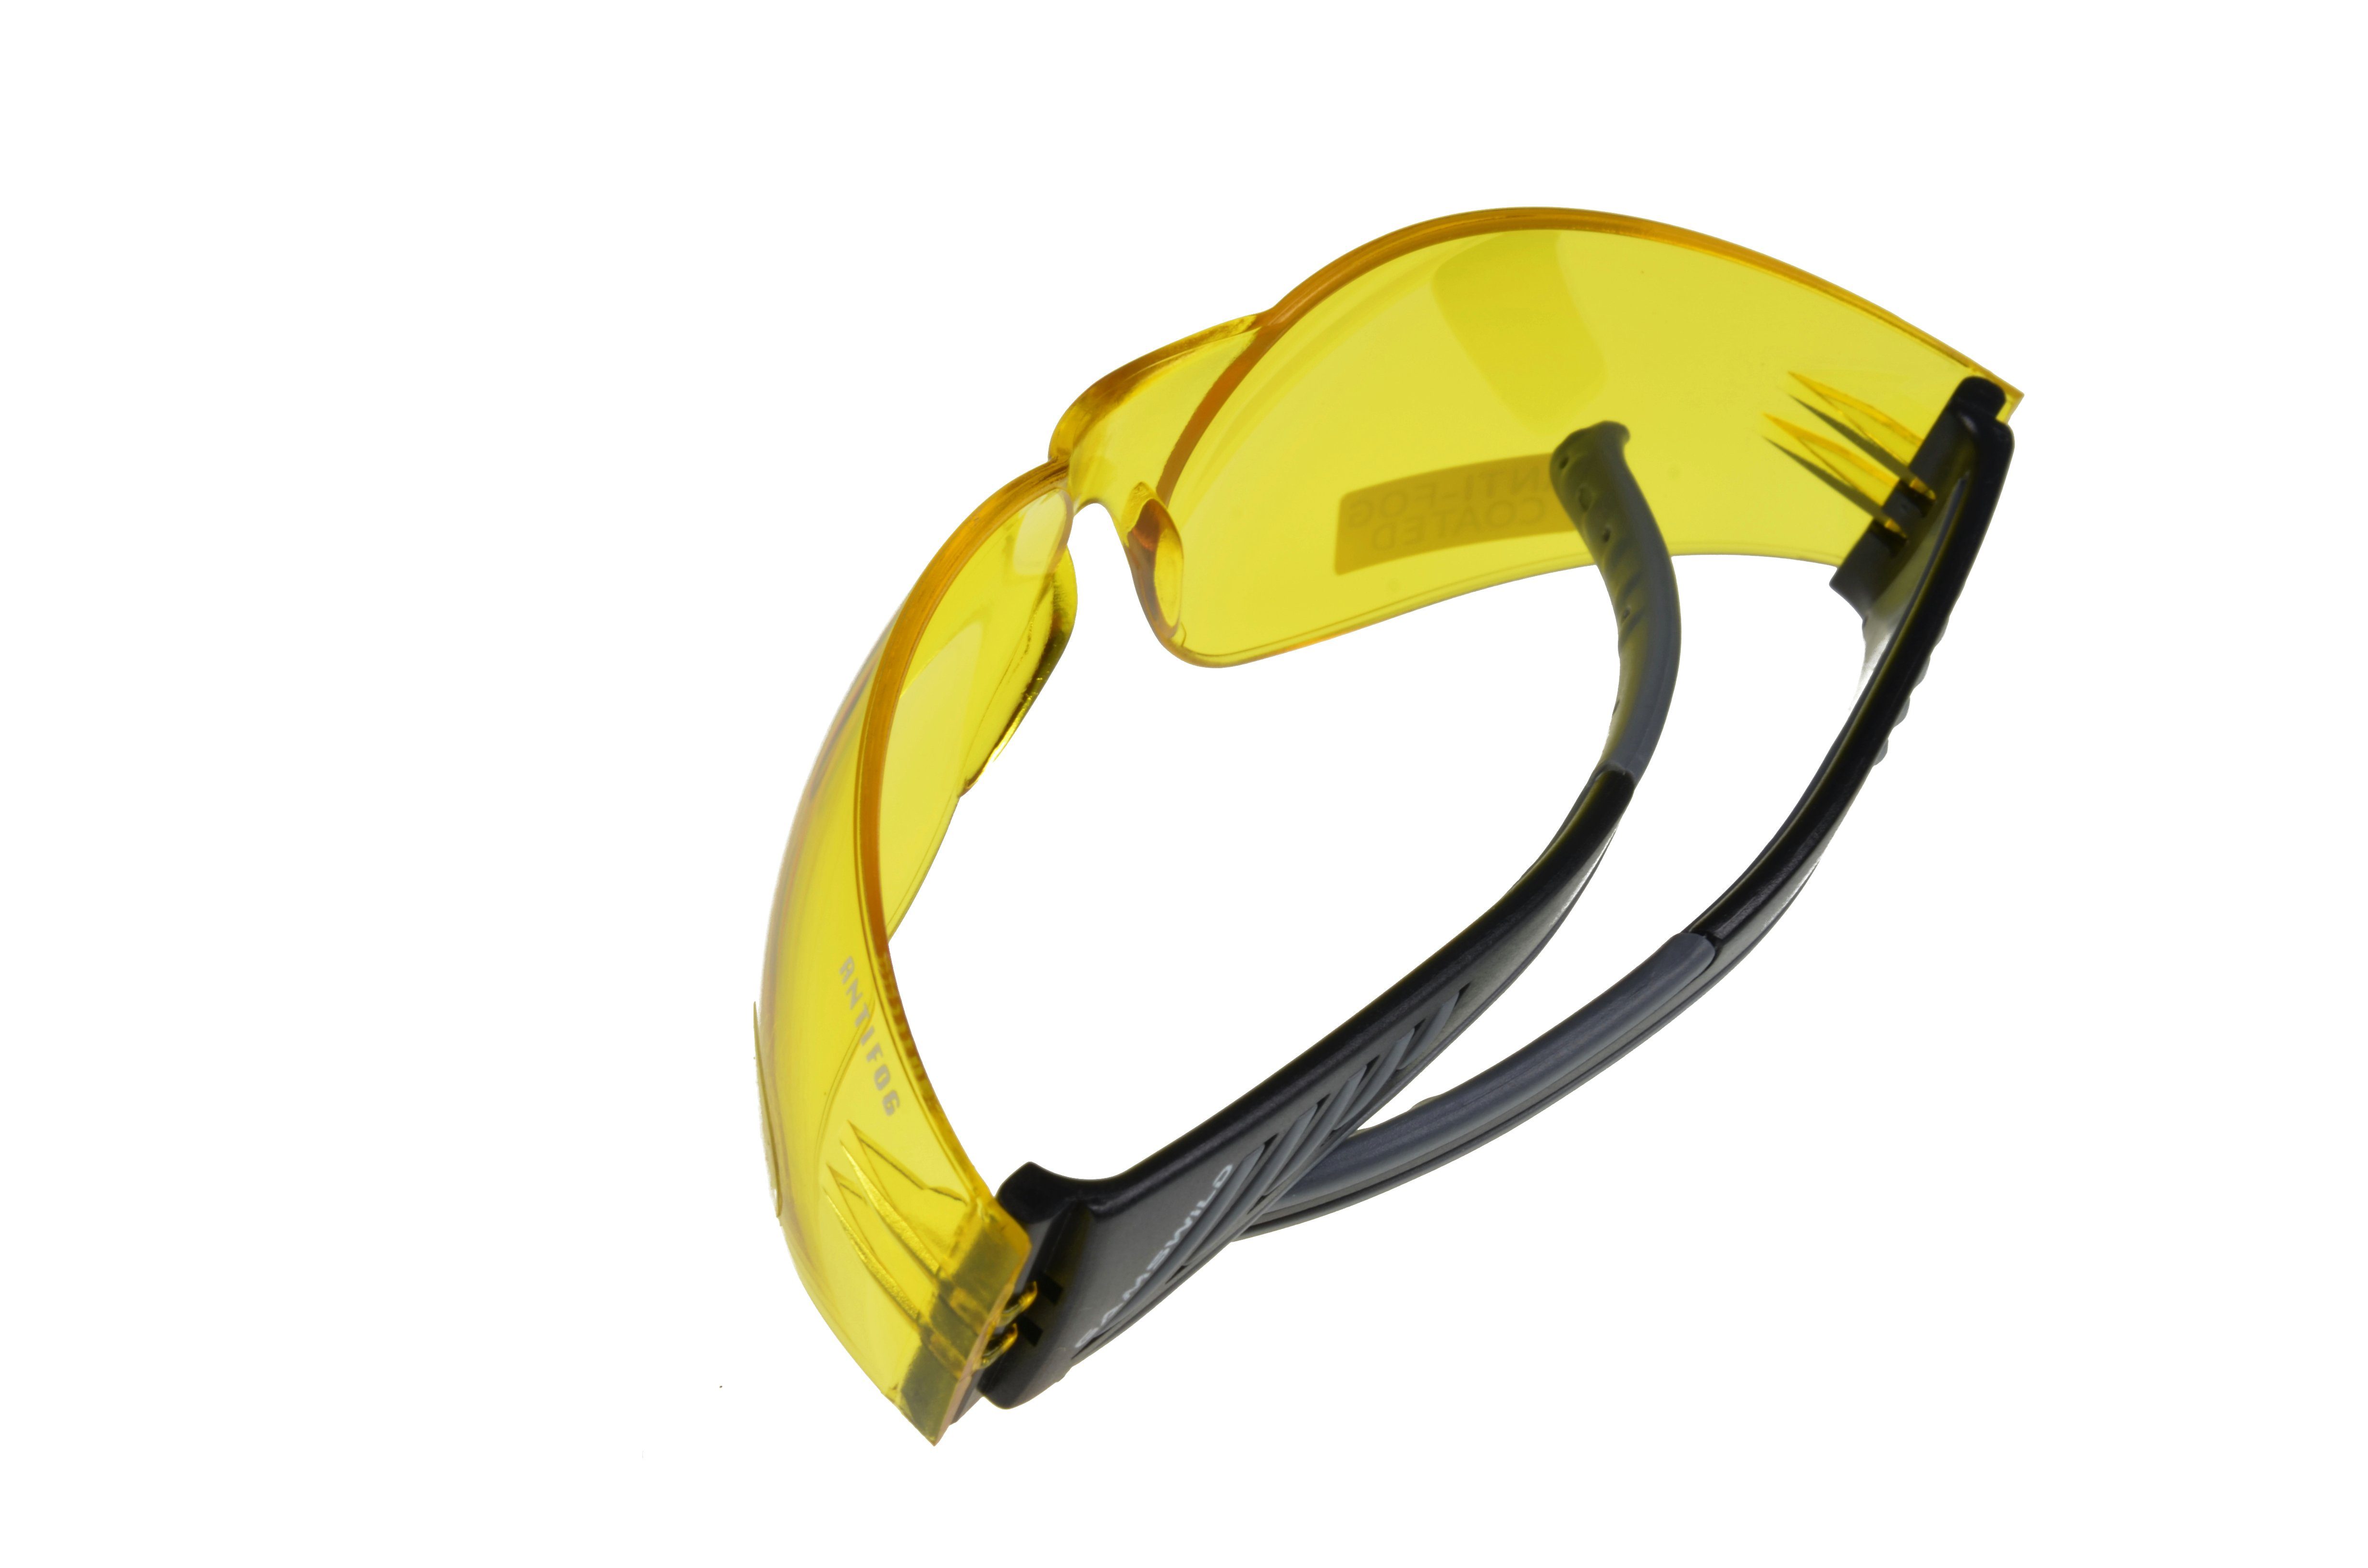 ANTIFOG Damen Skibrille orange, Fahrradbrille Gamswild Sonnenbrille WS7122 Sportbrille grau, Herren brau, Unisex, gelb